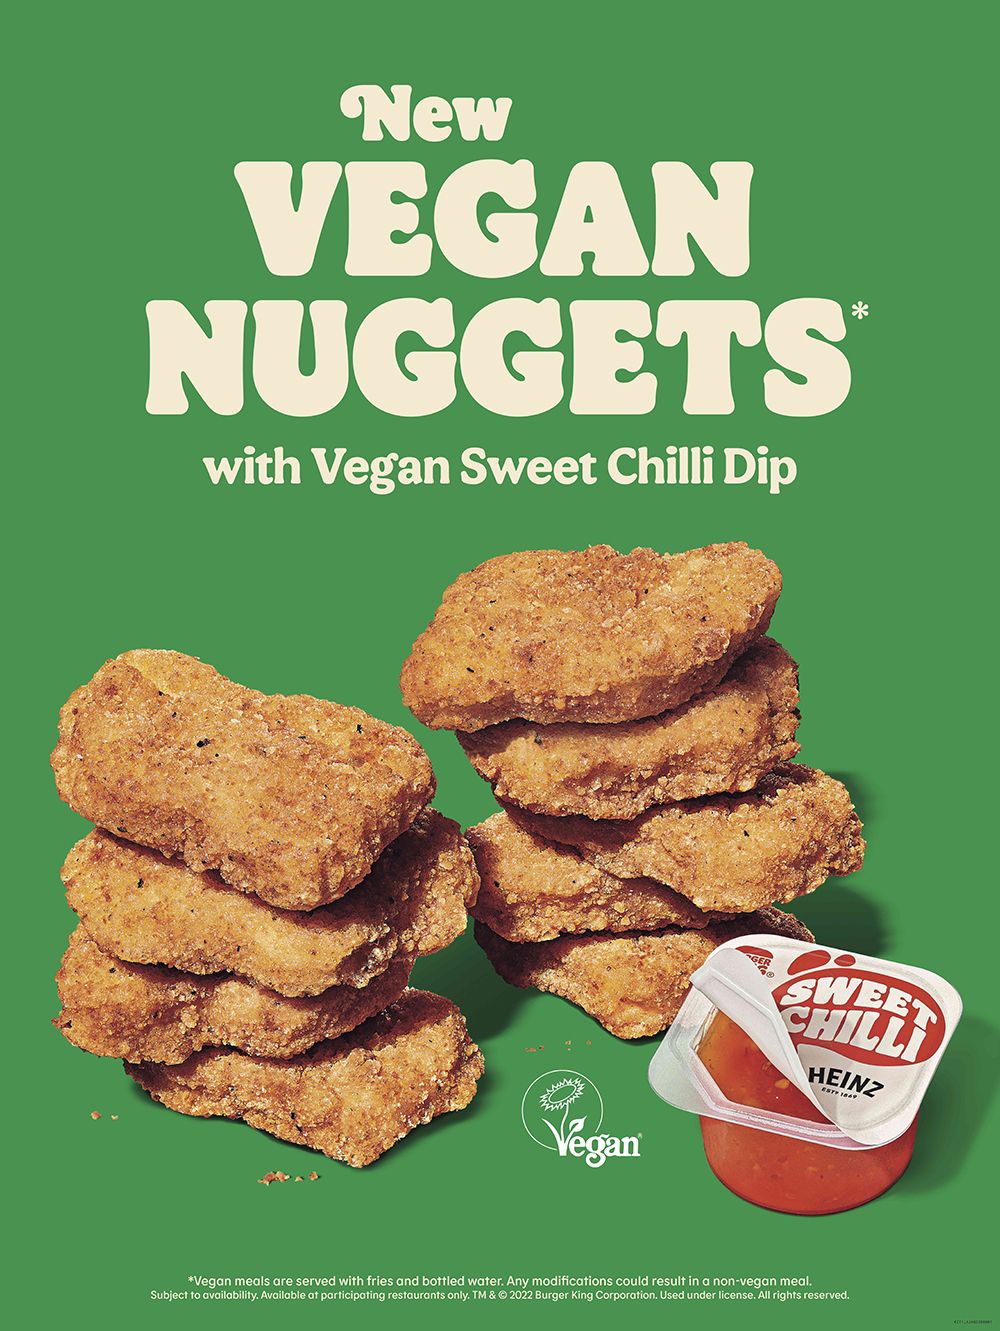 Burger King vegan nuggets